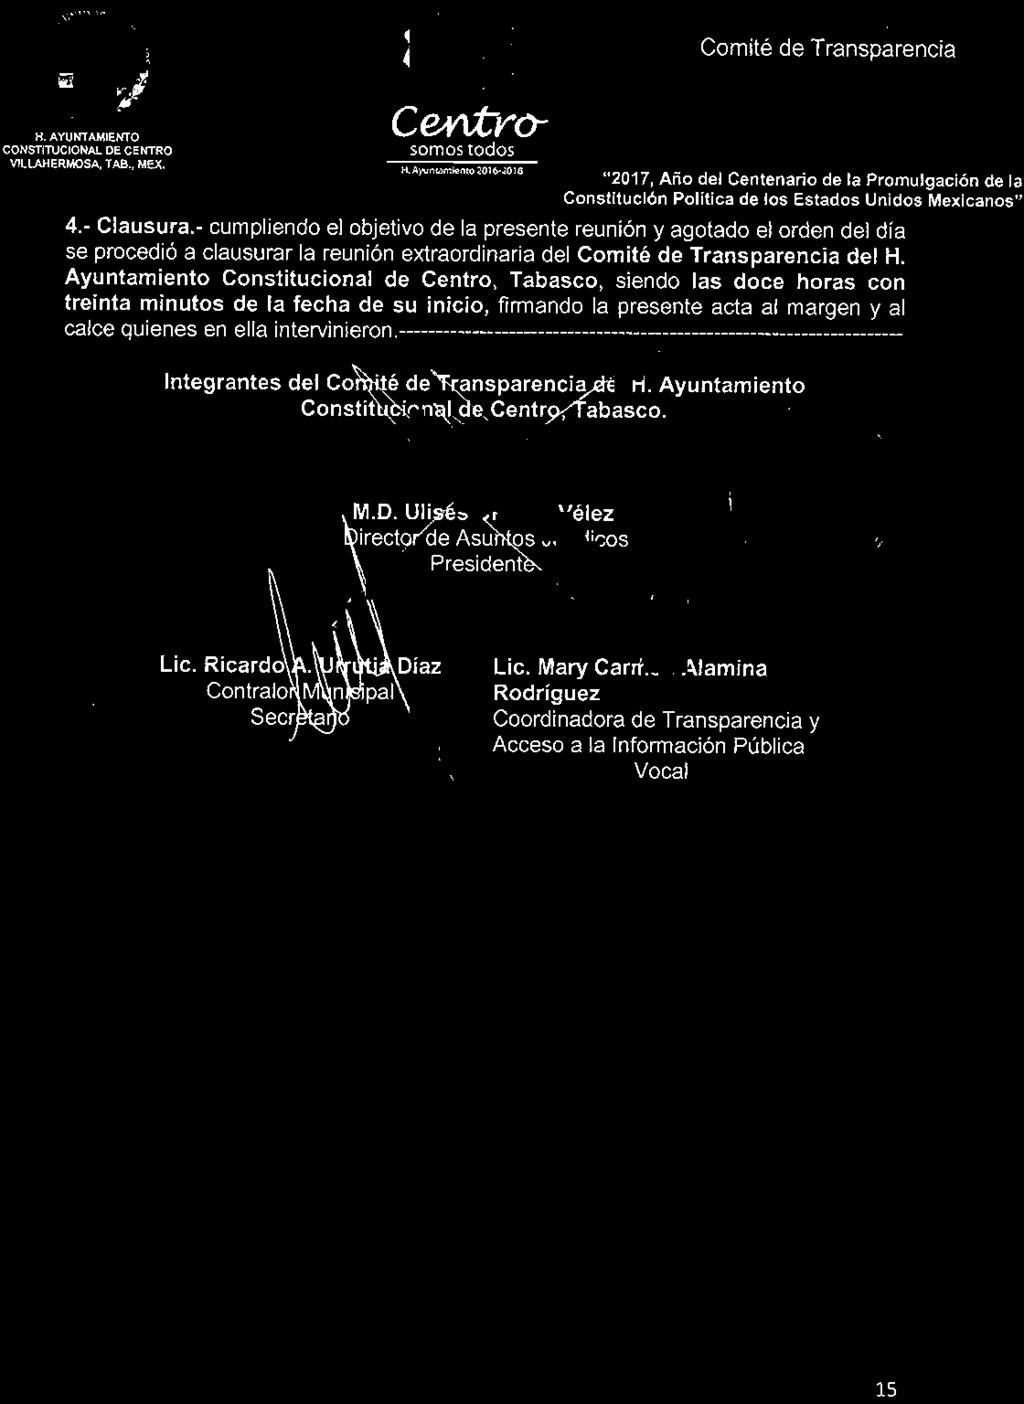 Integrantes de! Cortrtté detransparenciadef H. Ayuntamiento Constitucional de Centro/fabasco. M.D.